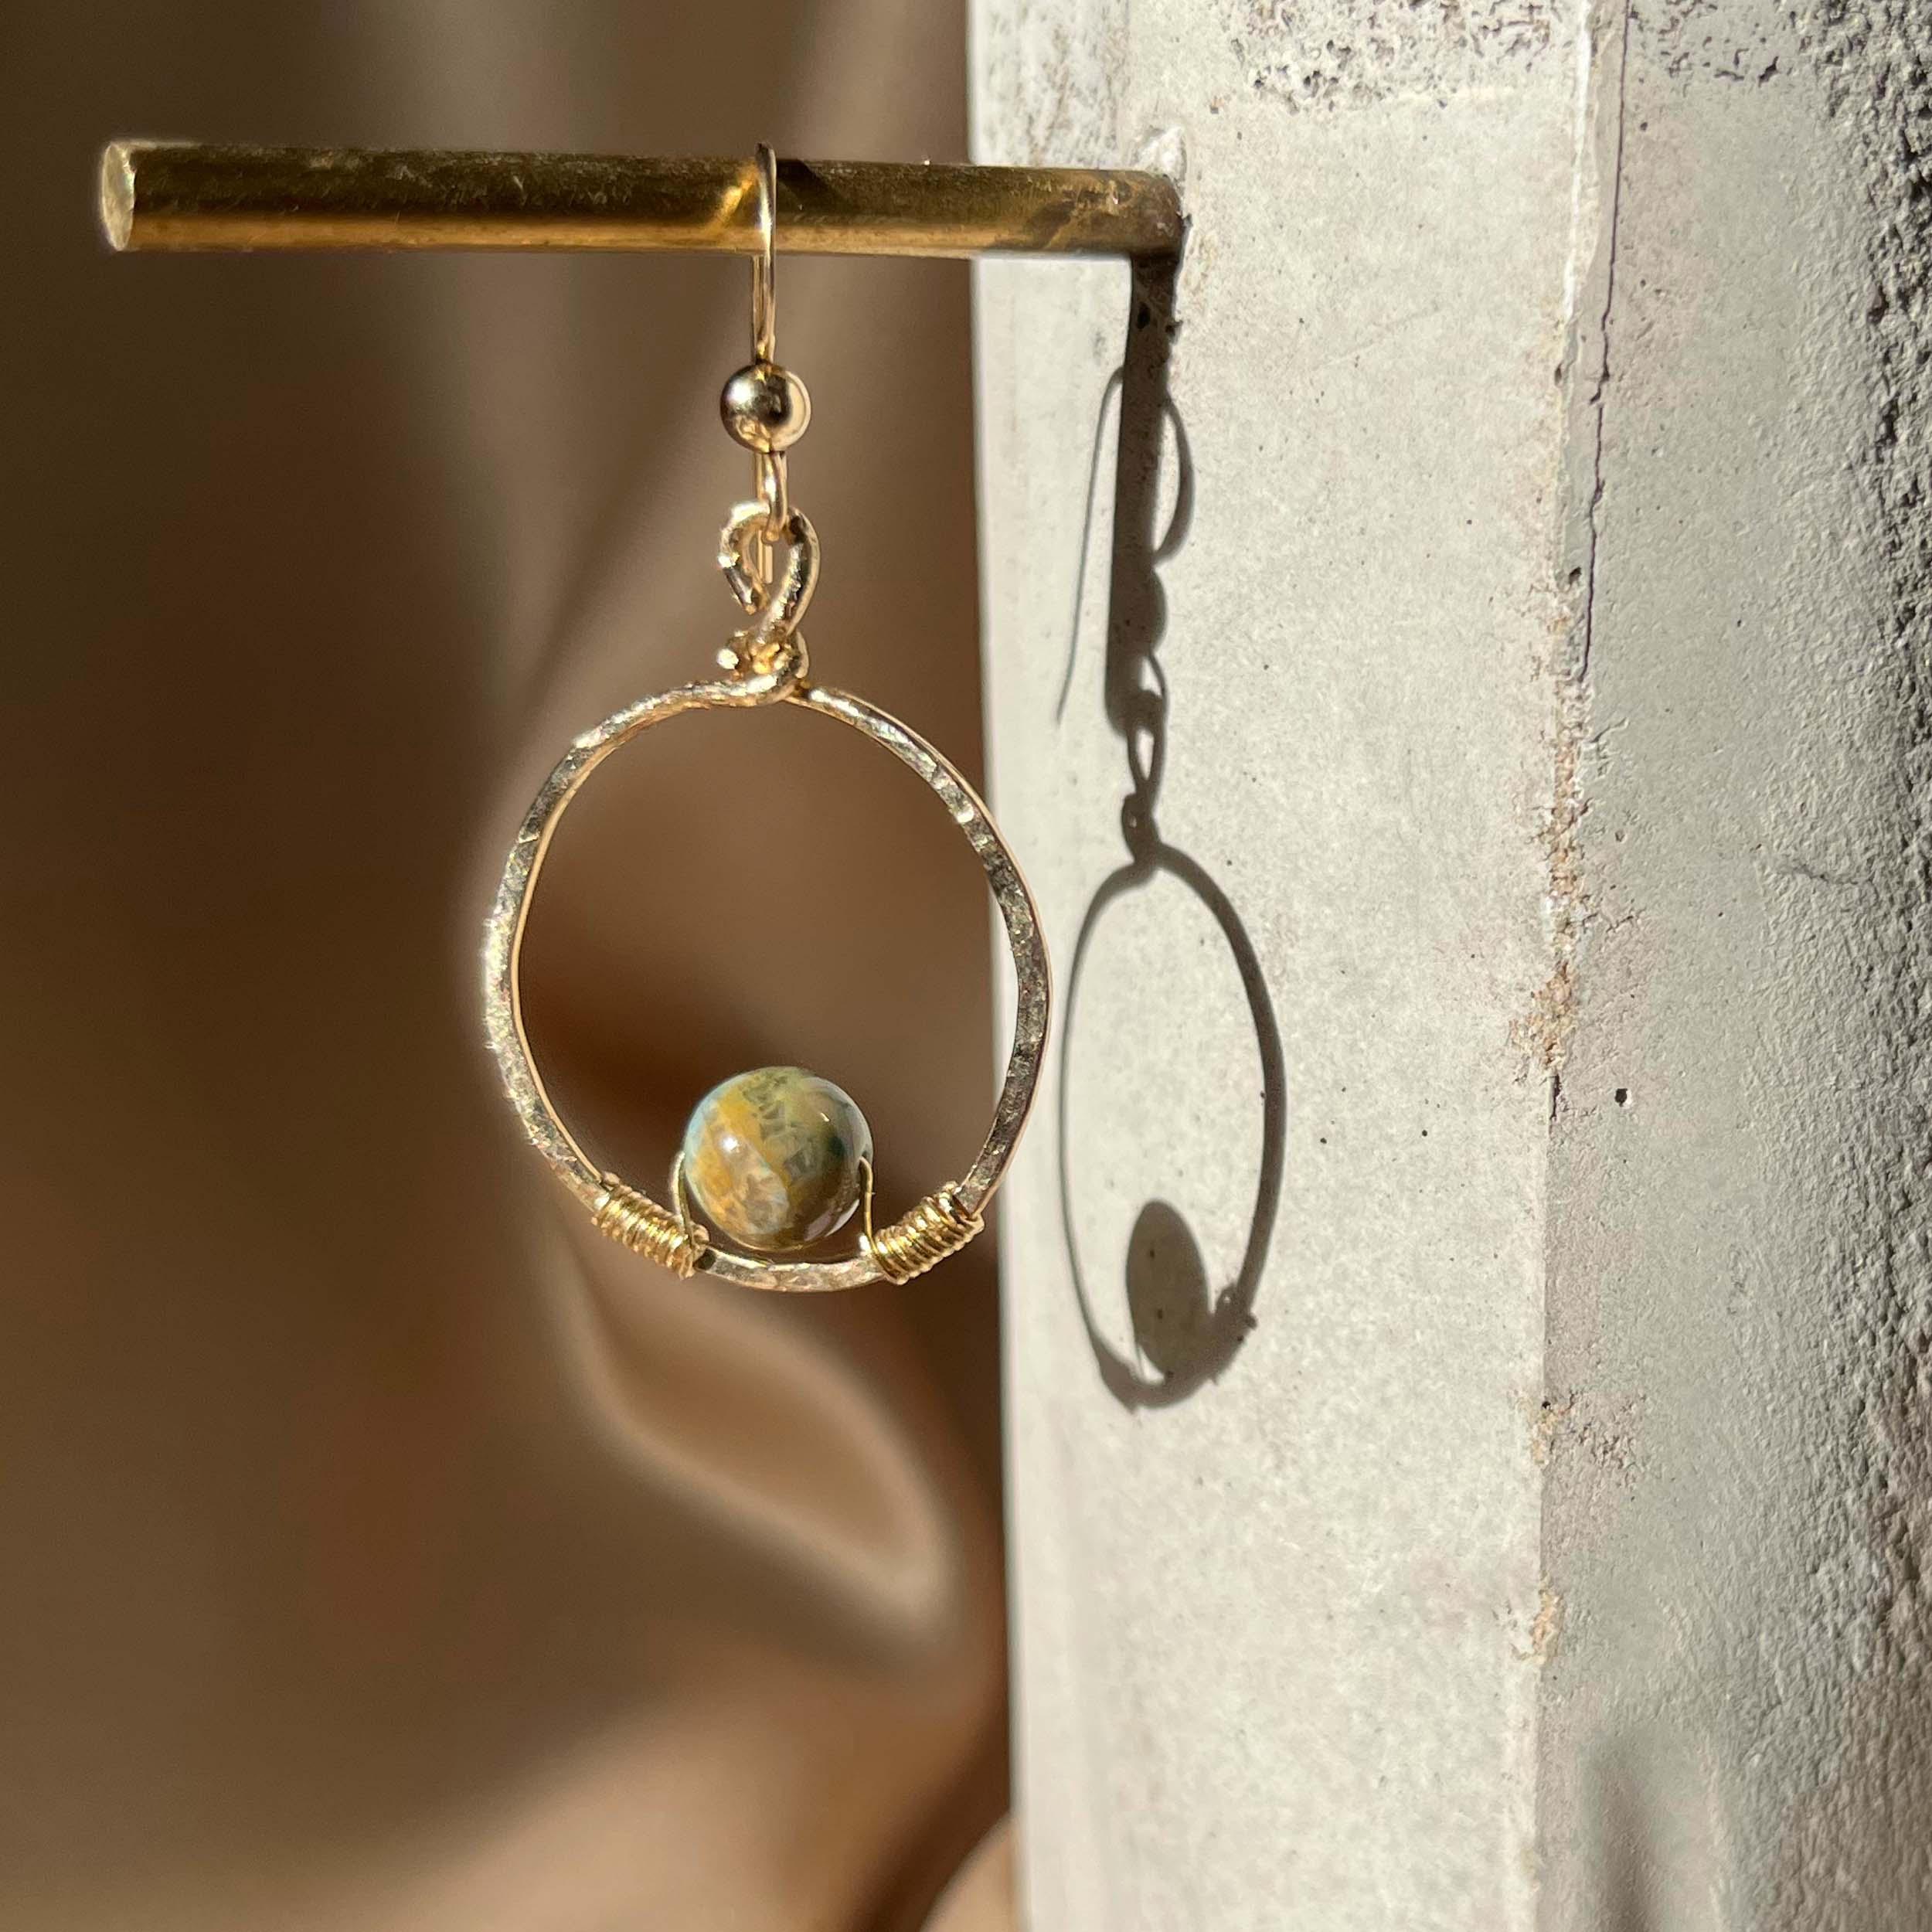 Mini Planet Hoop Earrings with 14k Gold Hand-Hammered Hoop